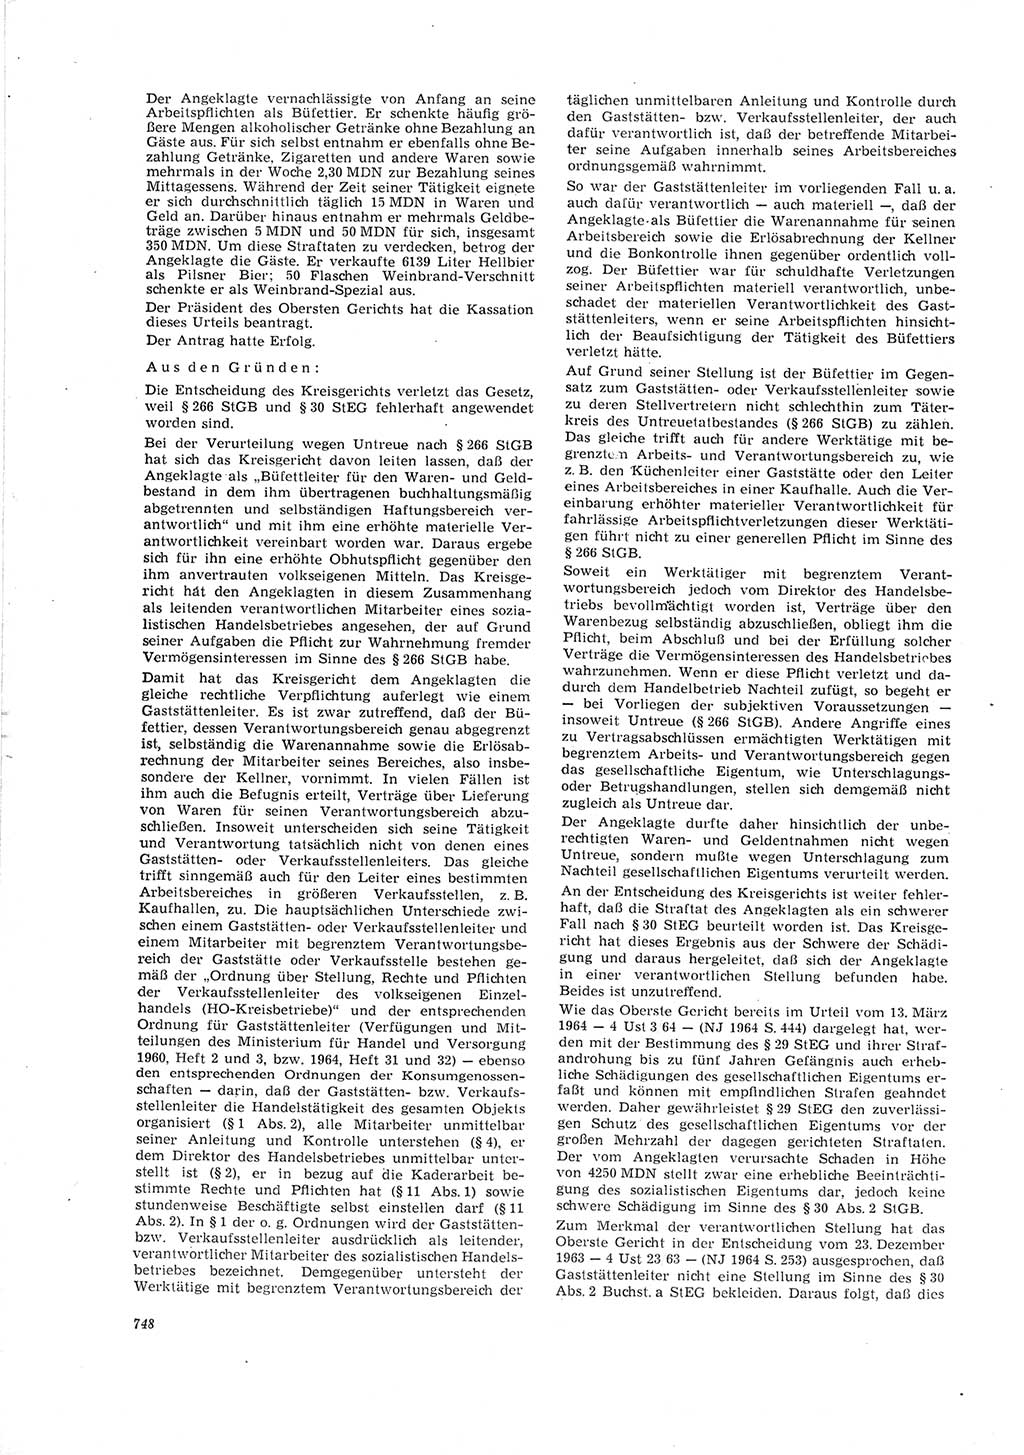 Neue Justiz (NJ), Zeitschrift für Recht und Rechtswissenschaft [Deutsche Demokratische Republik (DDR)], 19. Jahrgang 1965, Seite 748 (NJ DDR 1965, S. 748)